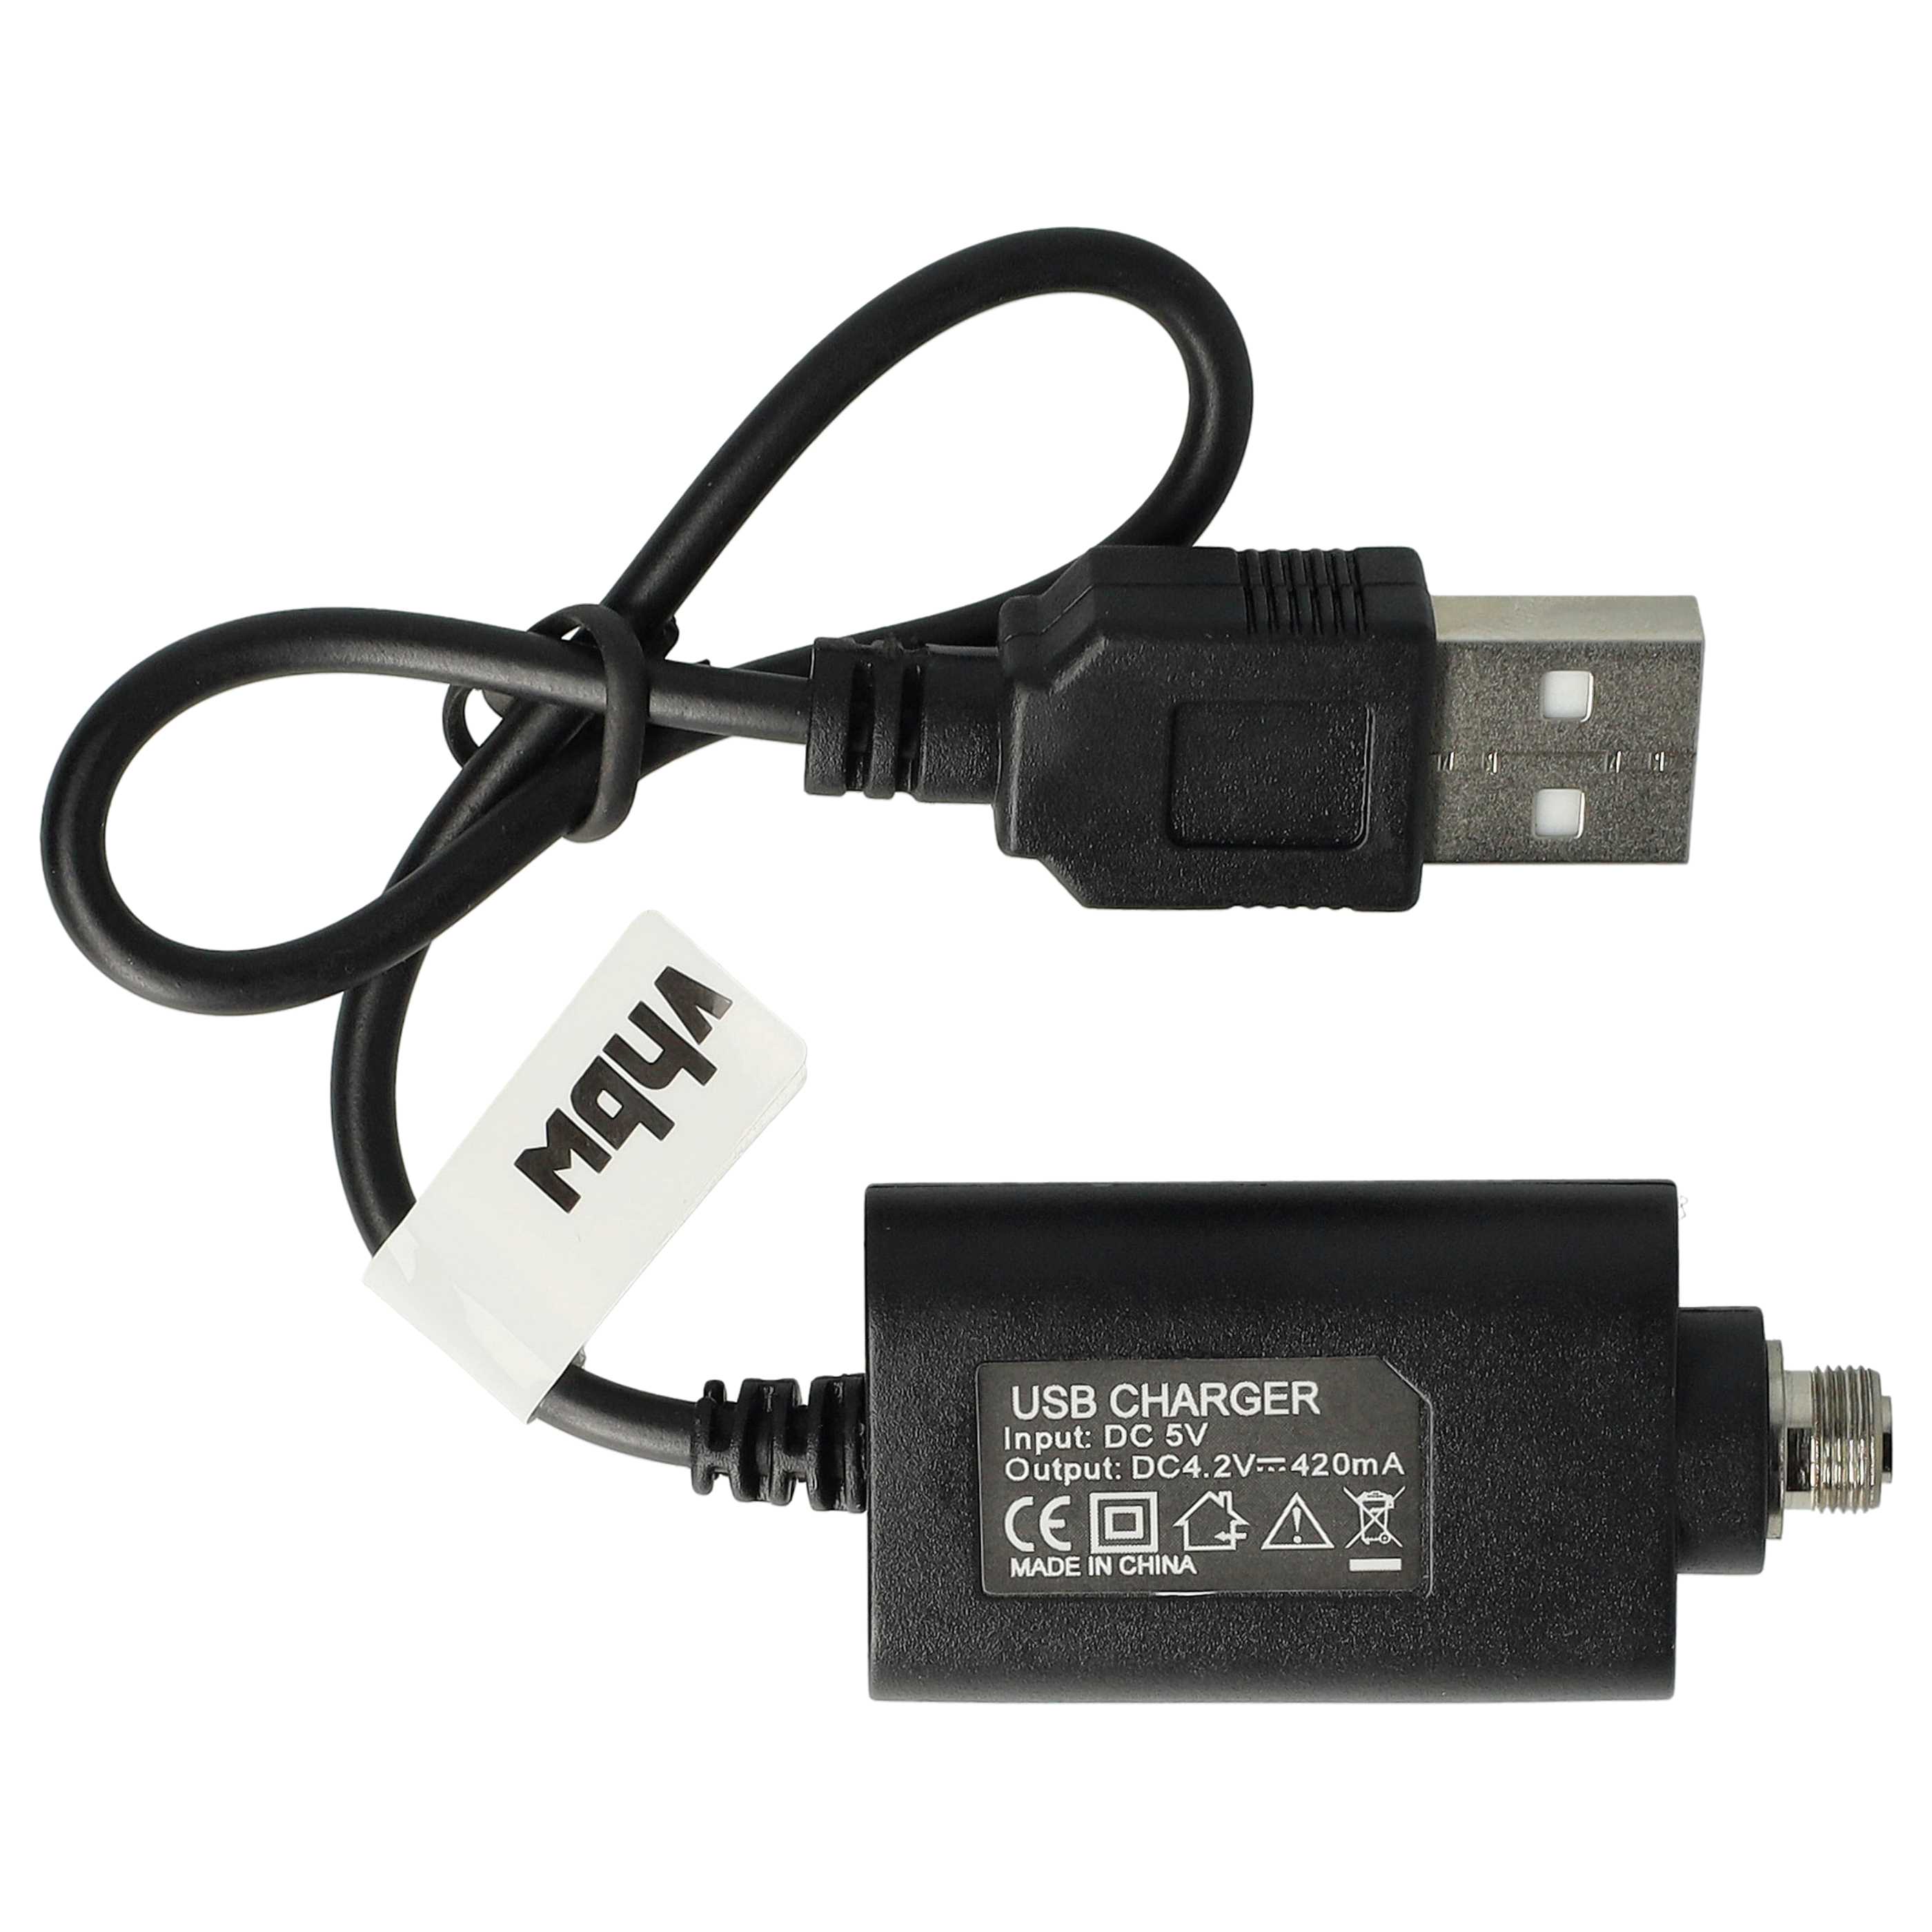 vhbw USB Ladegerät kompatibel mit diversen E-Zigaretten, E-Shisha Geräten mit Schraubverschluss - 25cm Ladekab